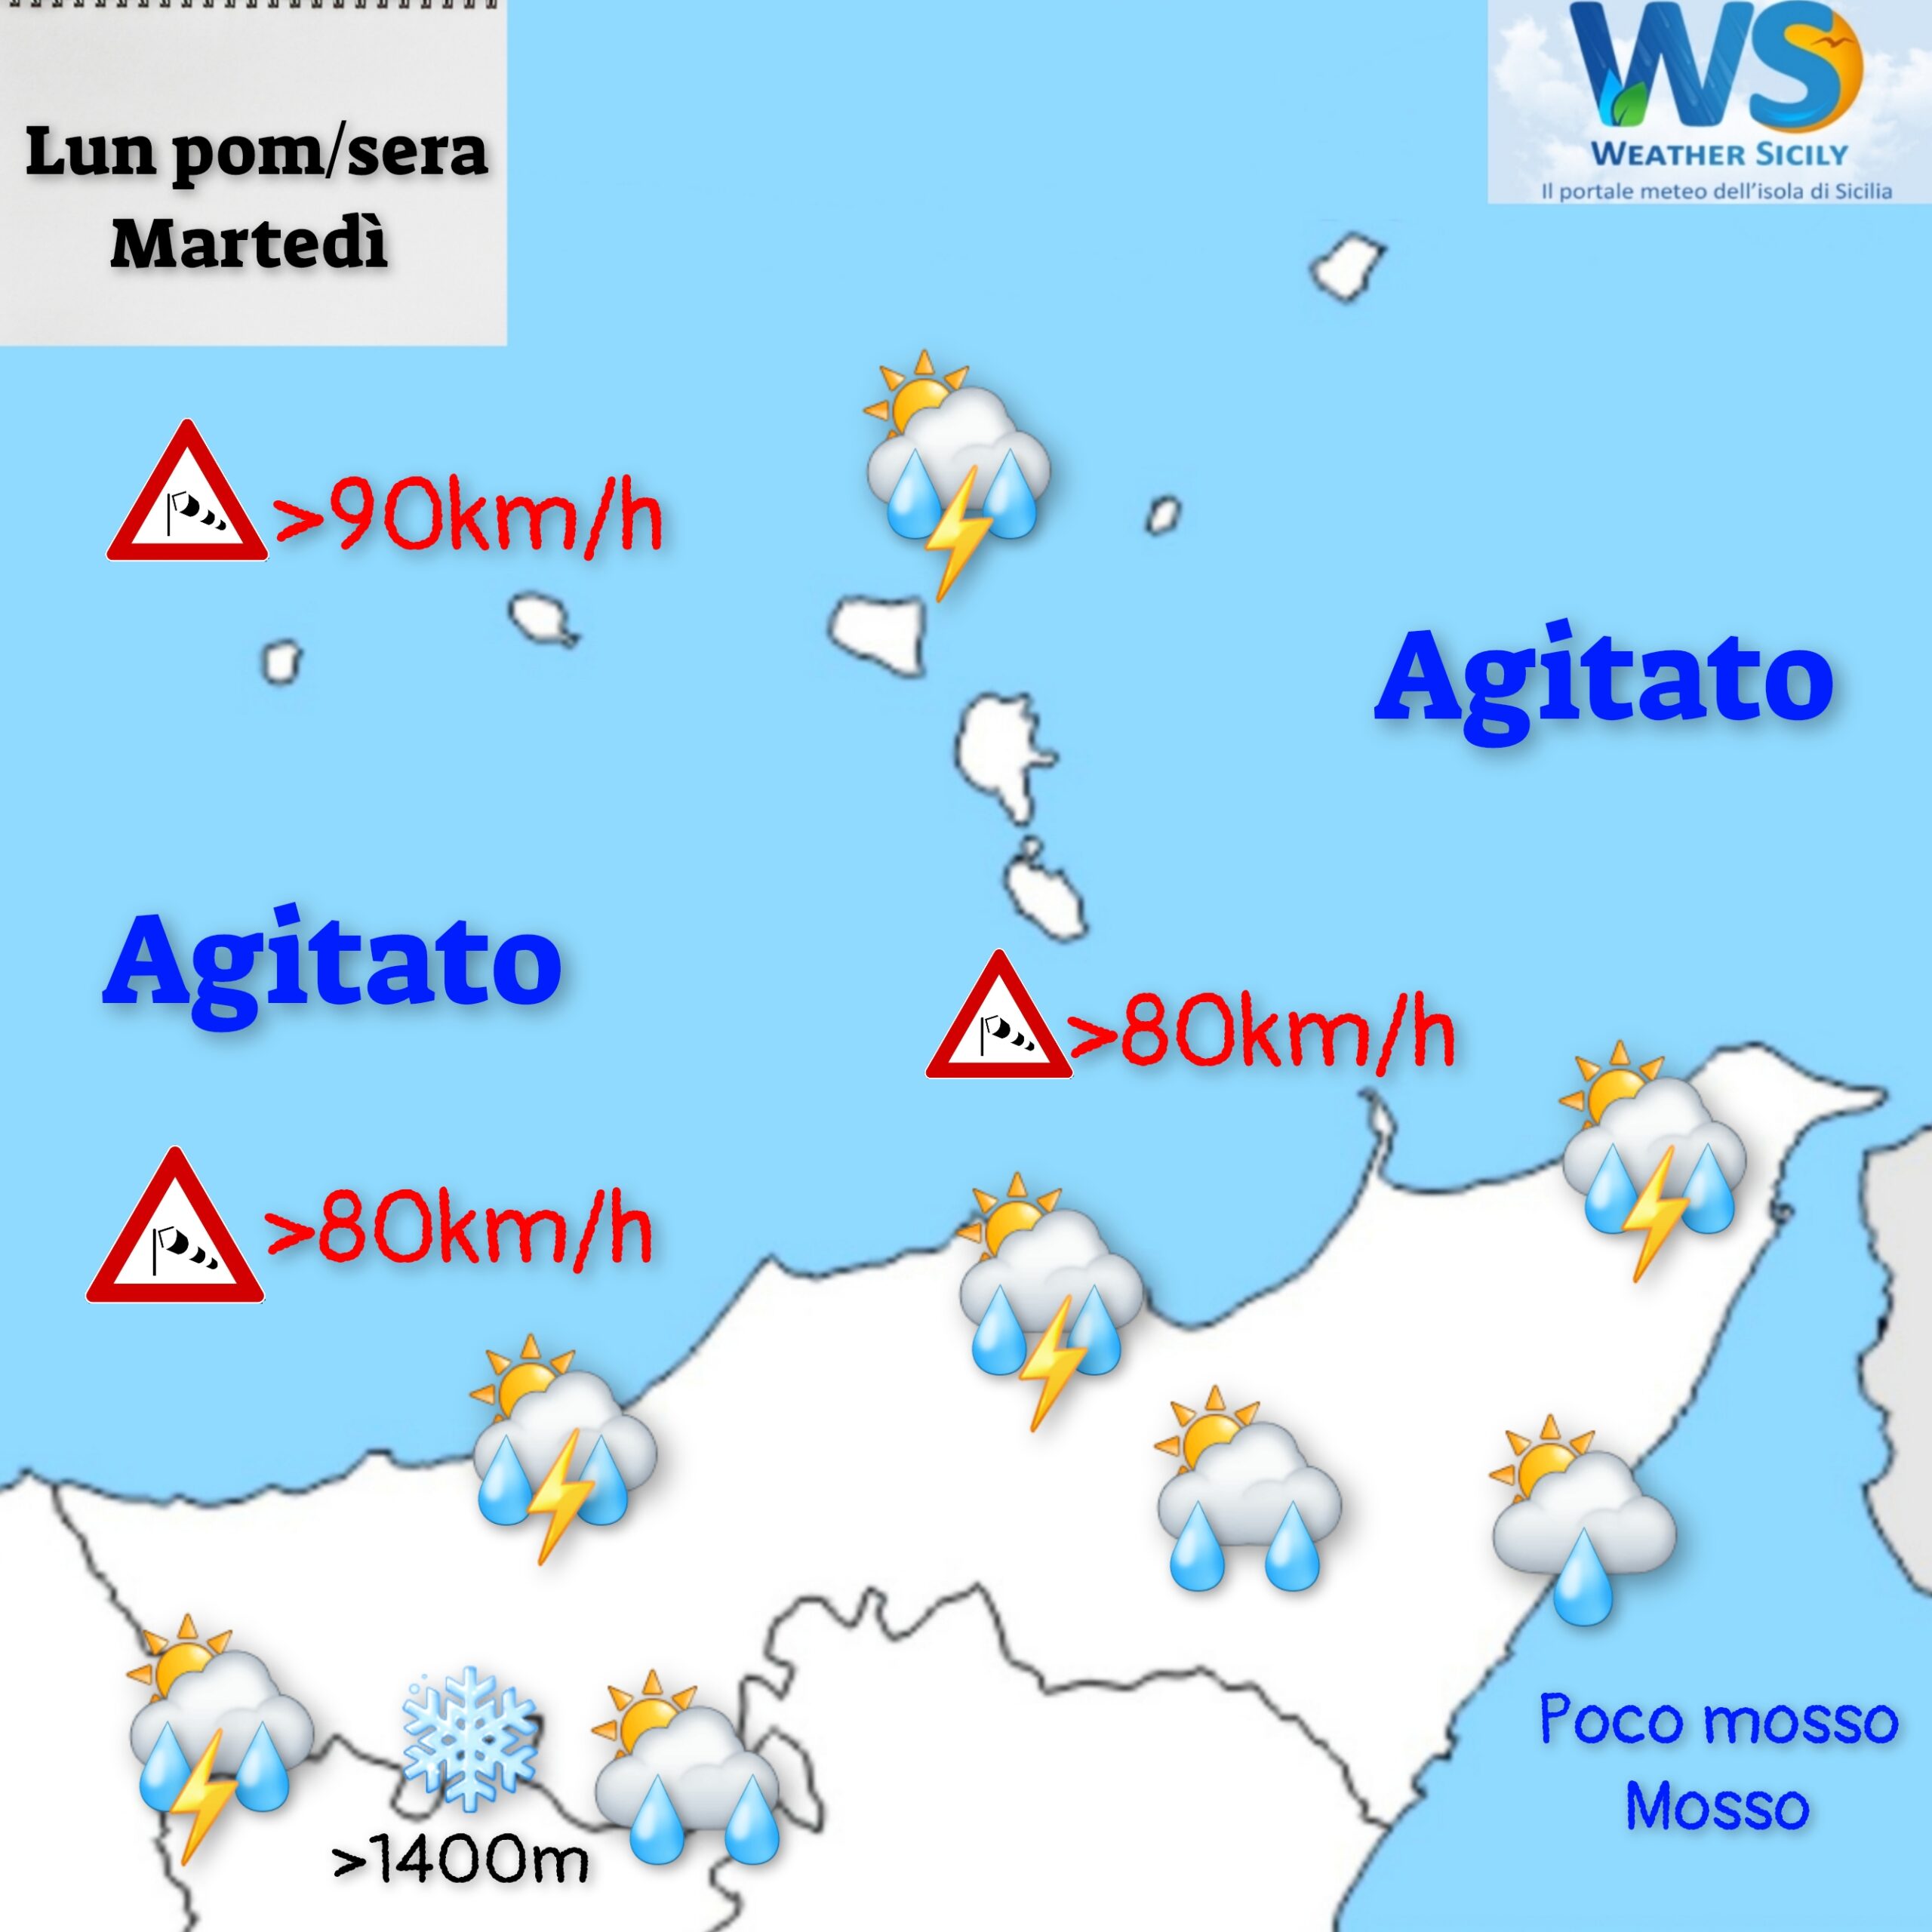 Meteo Messina e provincia: peggiora dal pomeriggio con piogge, forte vento e calo termico